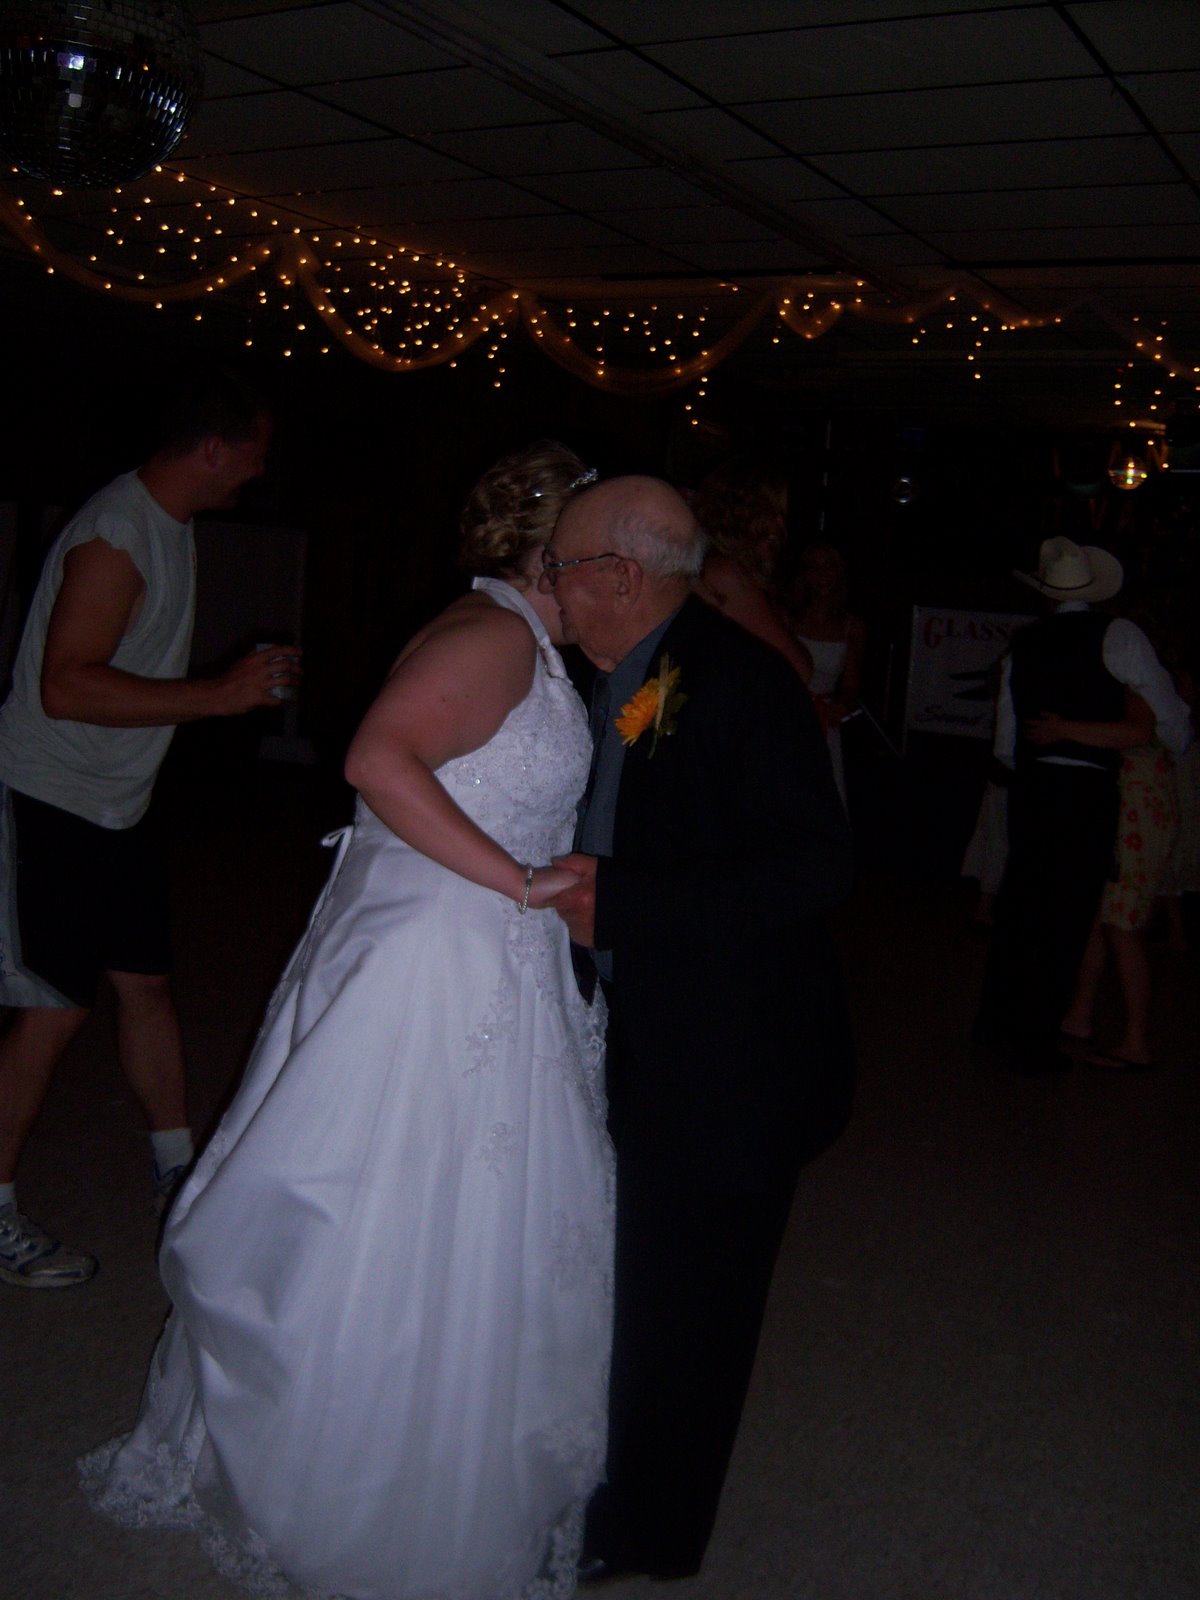 [Grandpa+dancing+2.jpg]